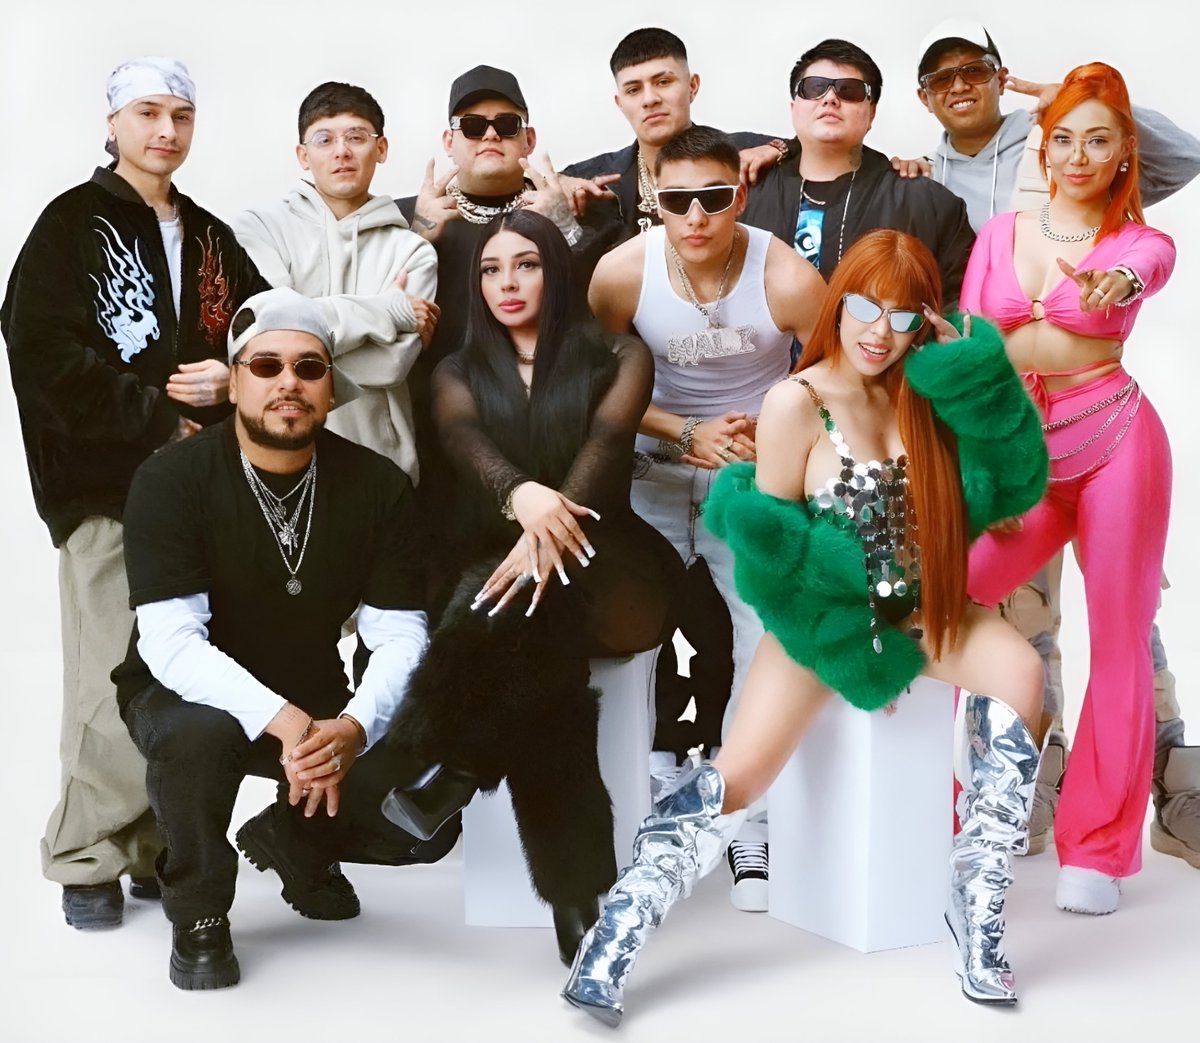 La música mexicana está en buenas manos 🇲🇽 Ellos son lo mejor de la industria musical actual y representan al gran talento de todo México segun Spotify.